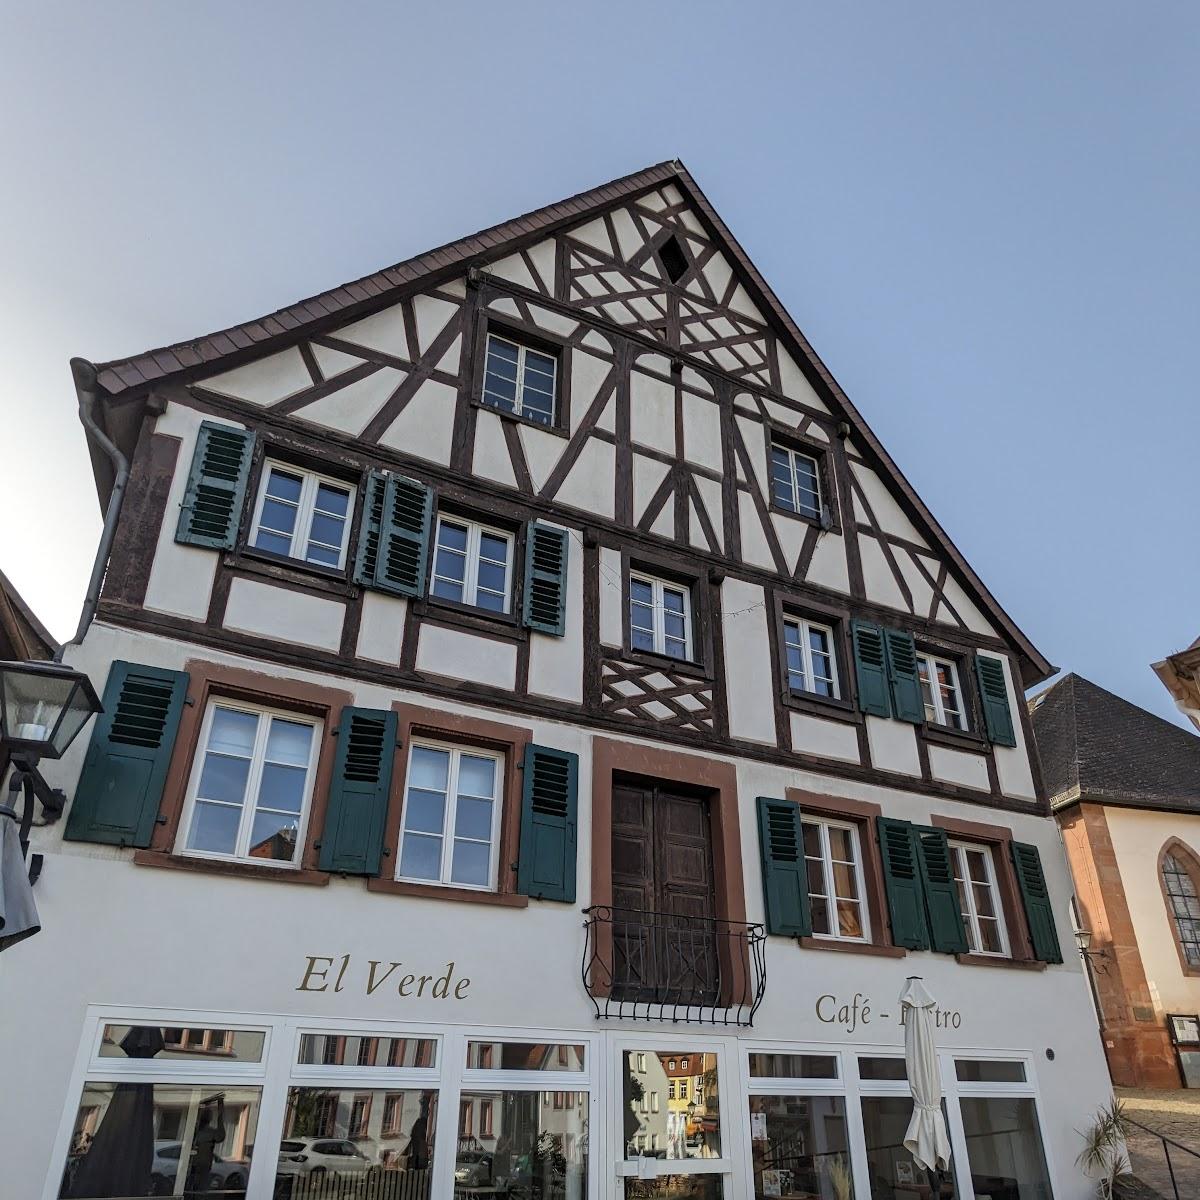 Restaurant "El Verde" in Ottweiler